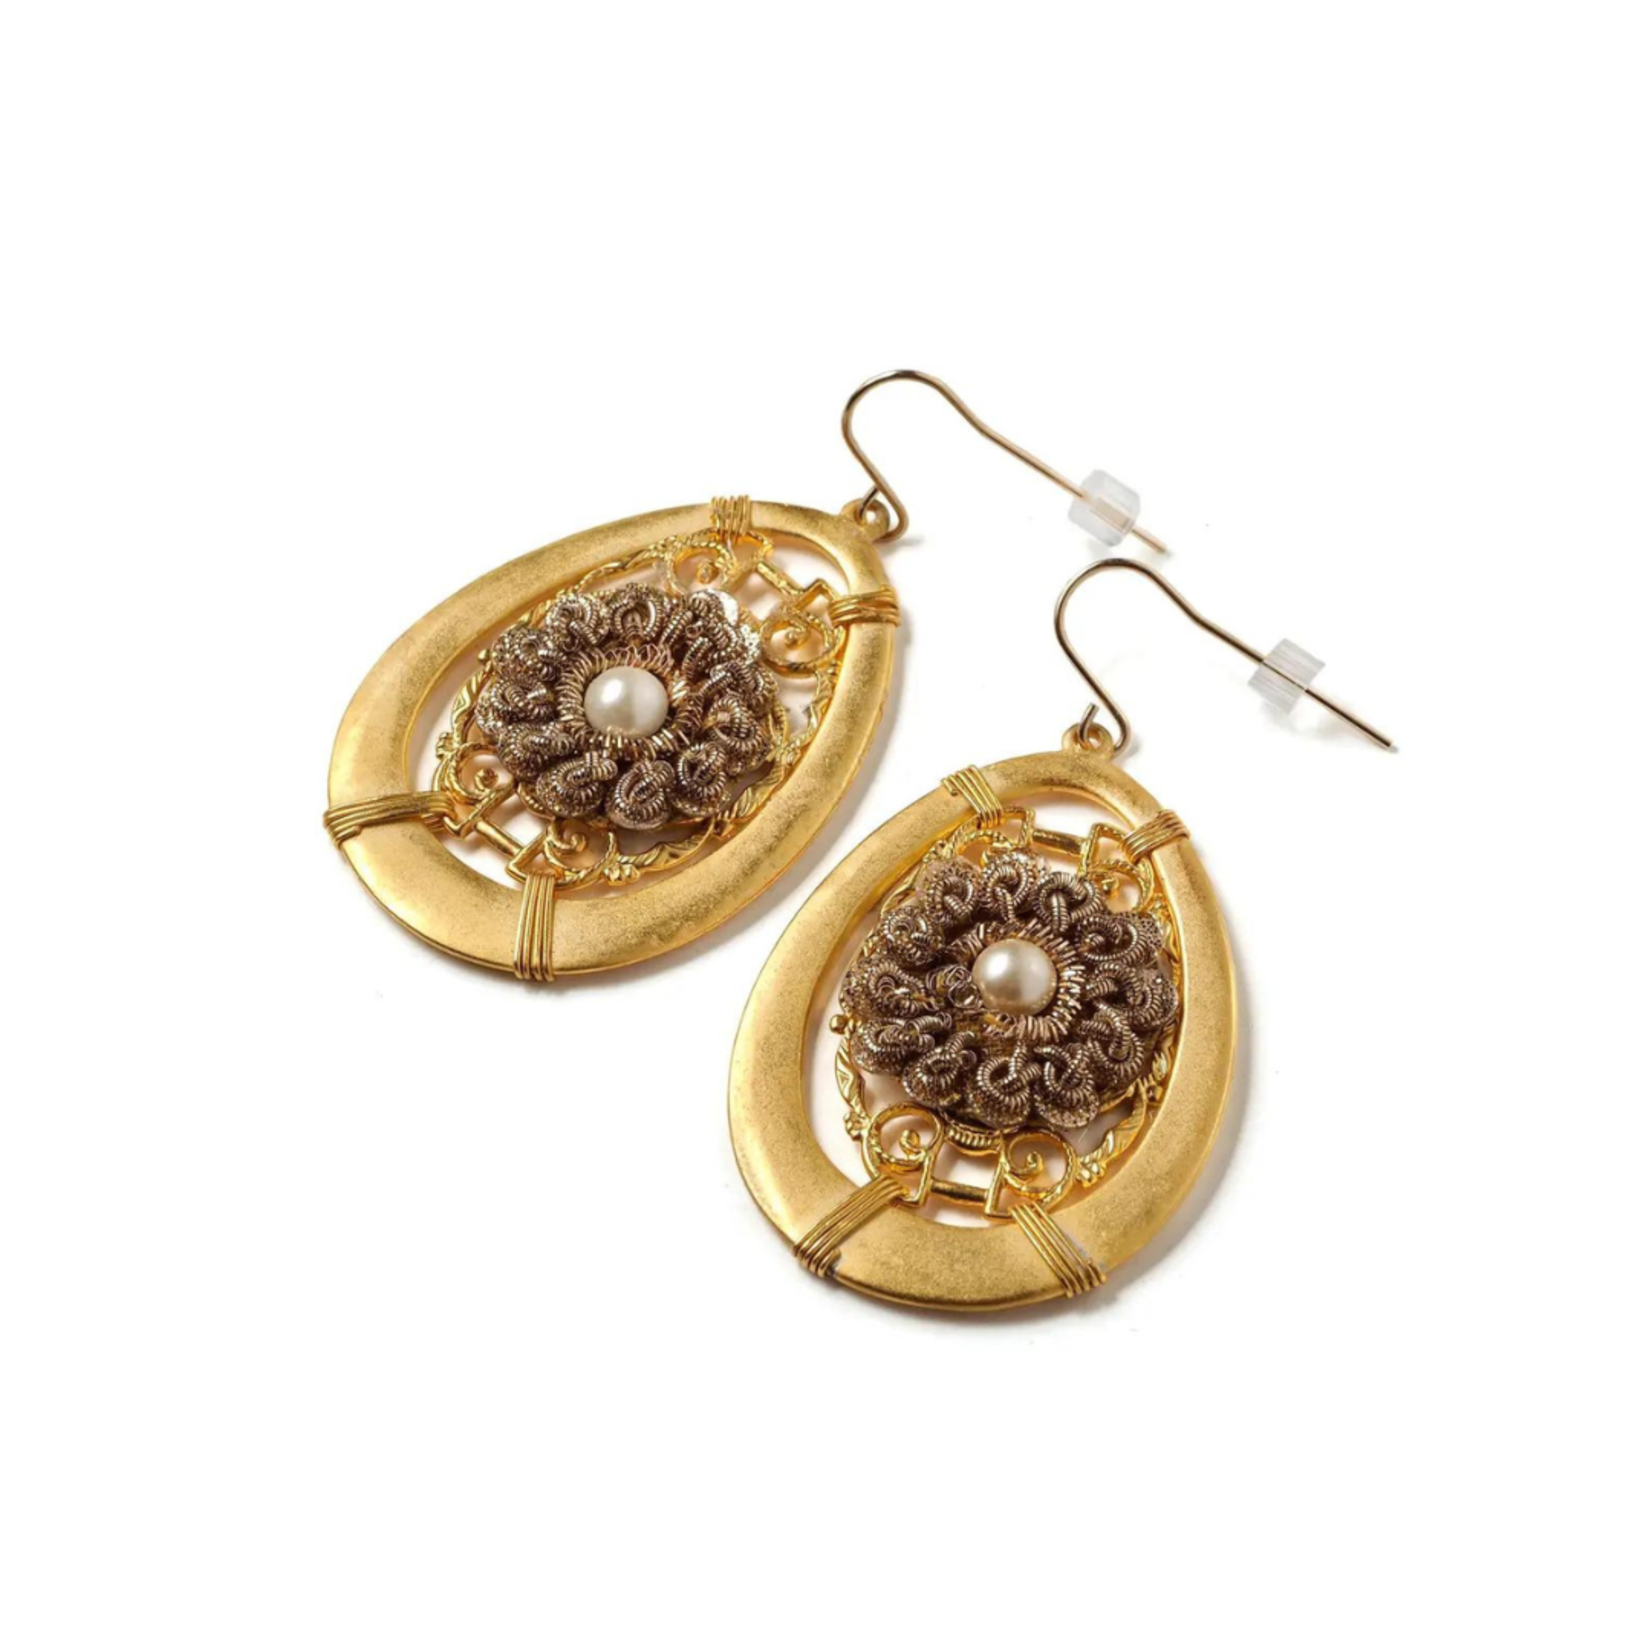 Elements, Jill Schwartz Golden Lace Earrings